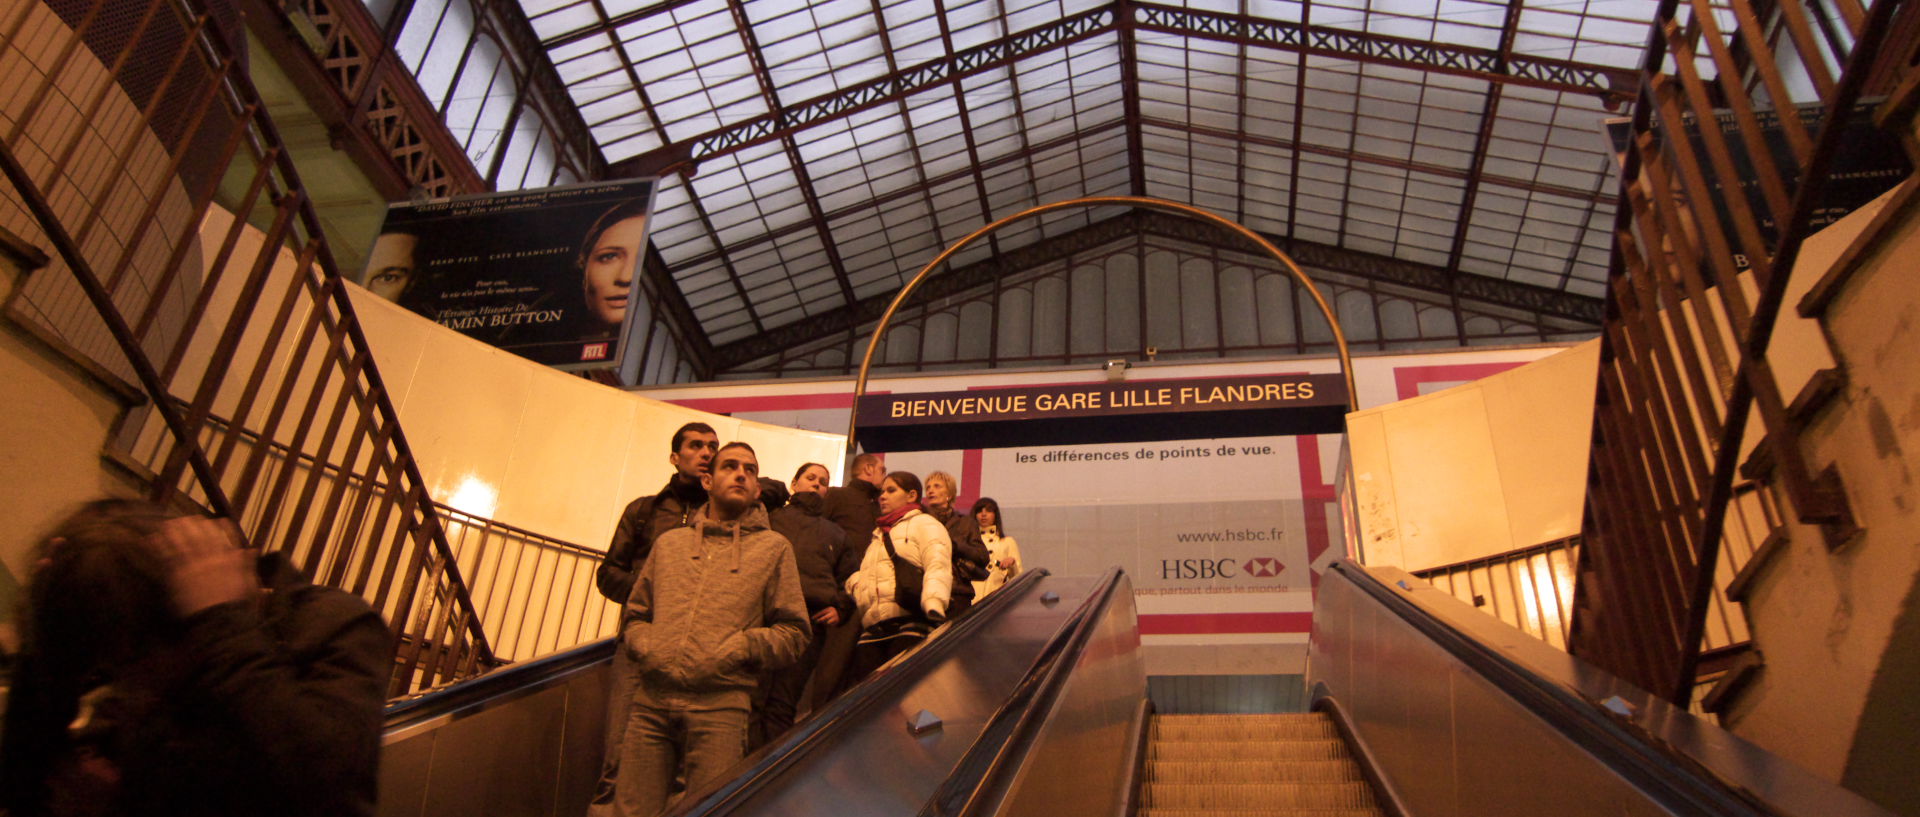 Samedi 27 décembre 2008, gare de Lille Flandres.